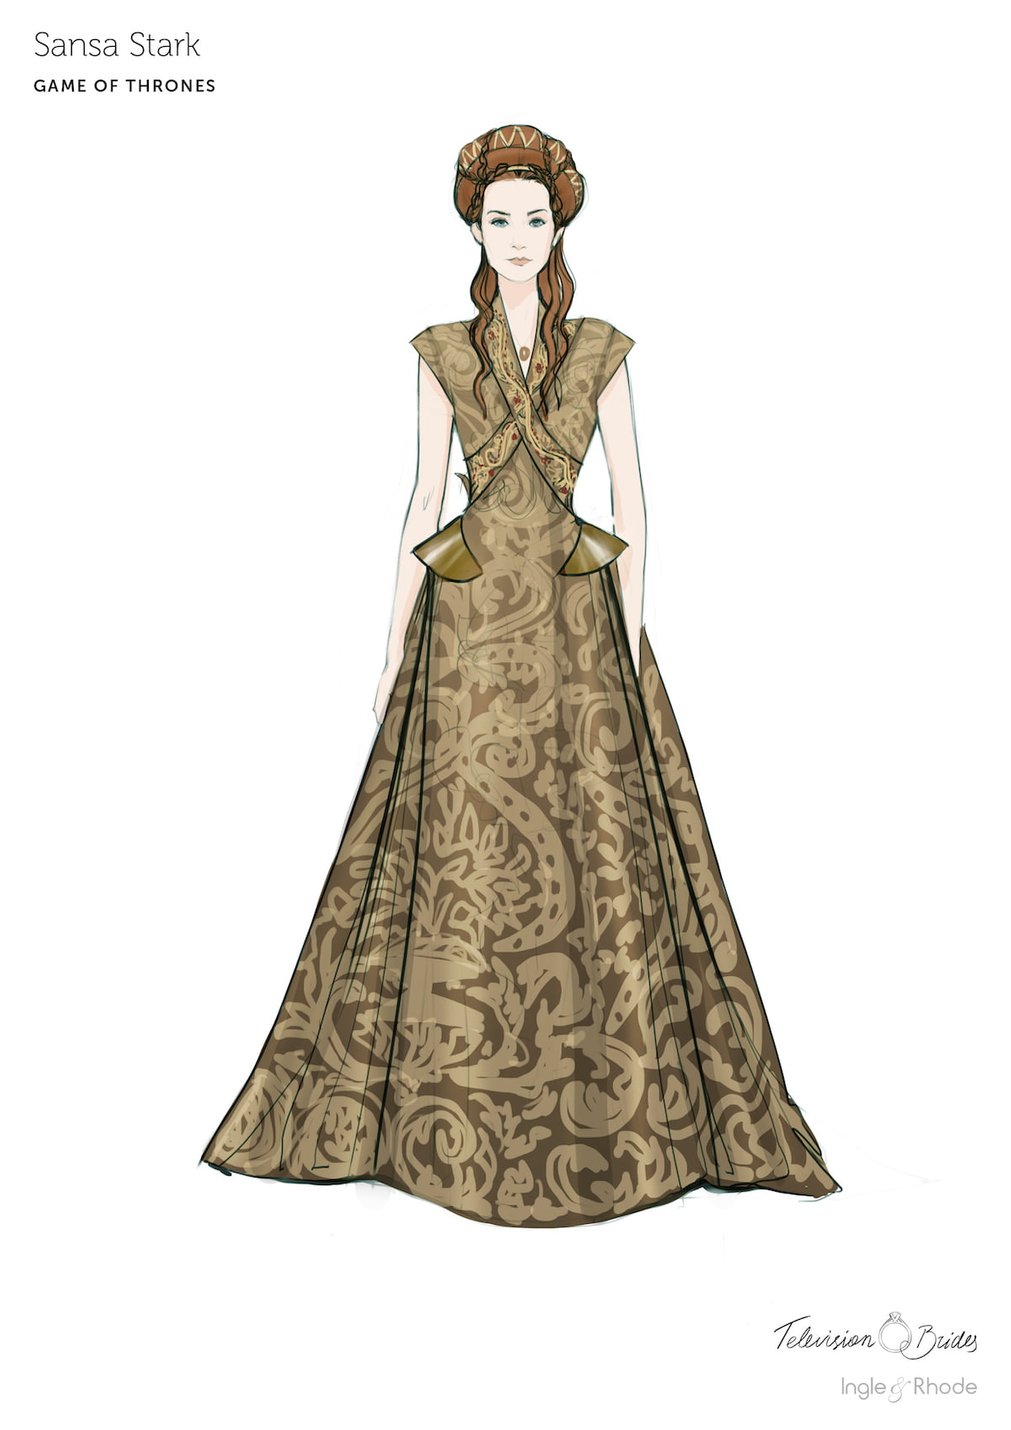 https://www.ingleandrhode.co.uk/files/3615/5540/7670/09_Game-of-Thrones-Sansa-Stark-wedding-dress.jpg